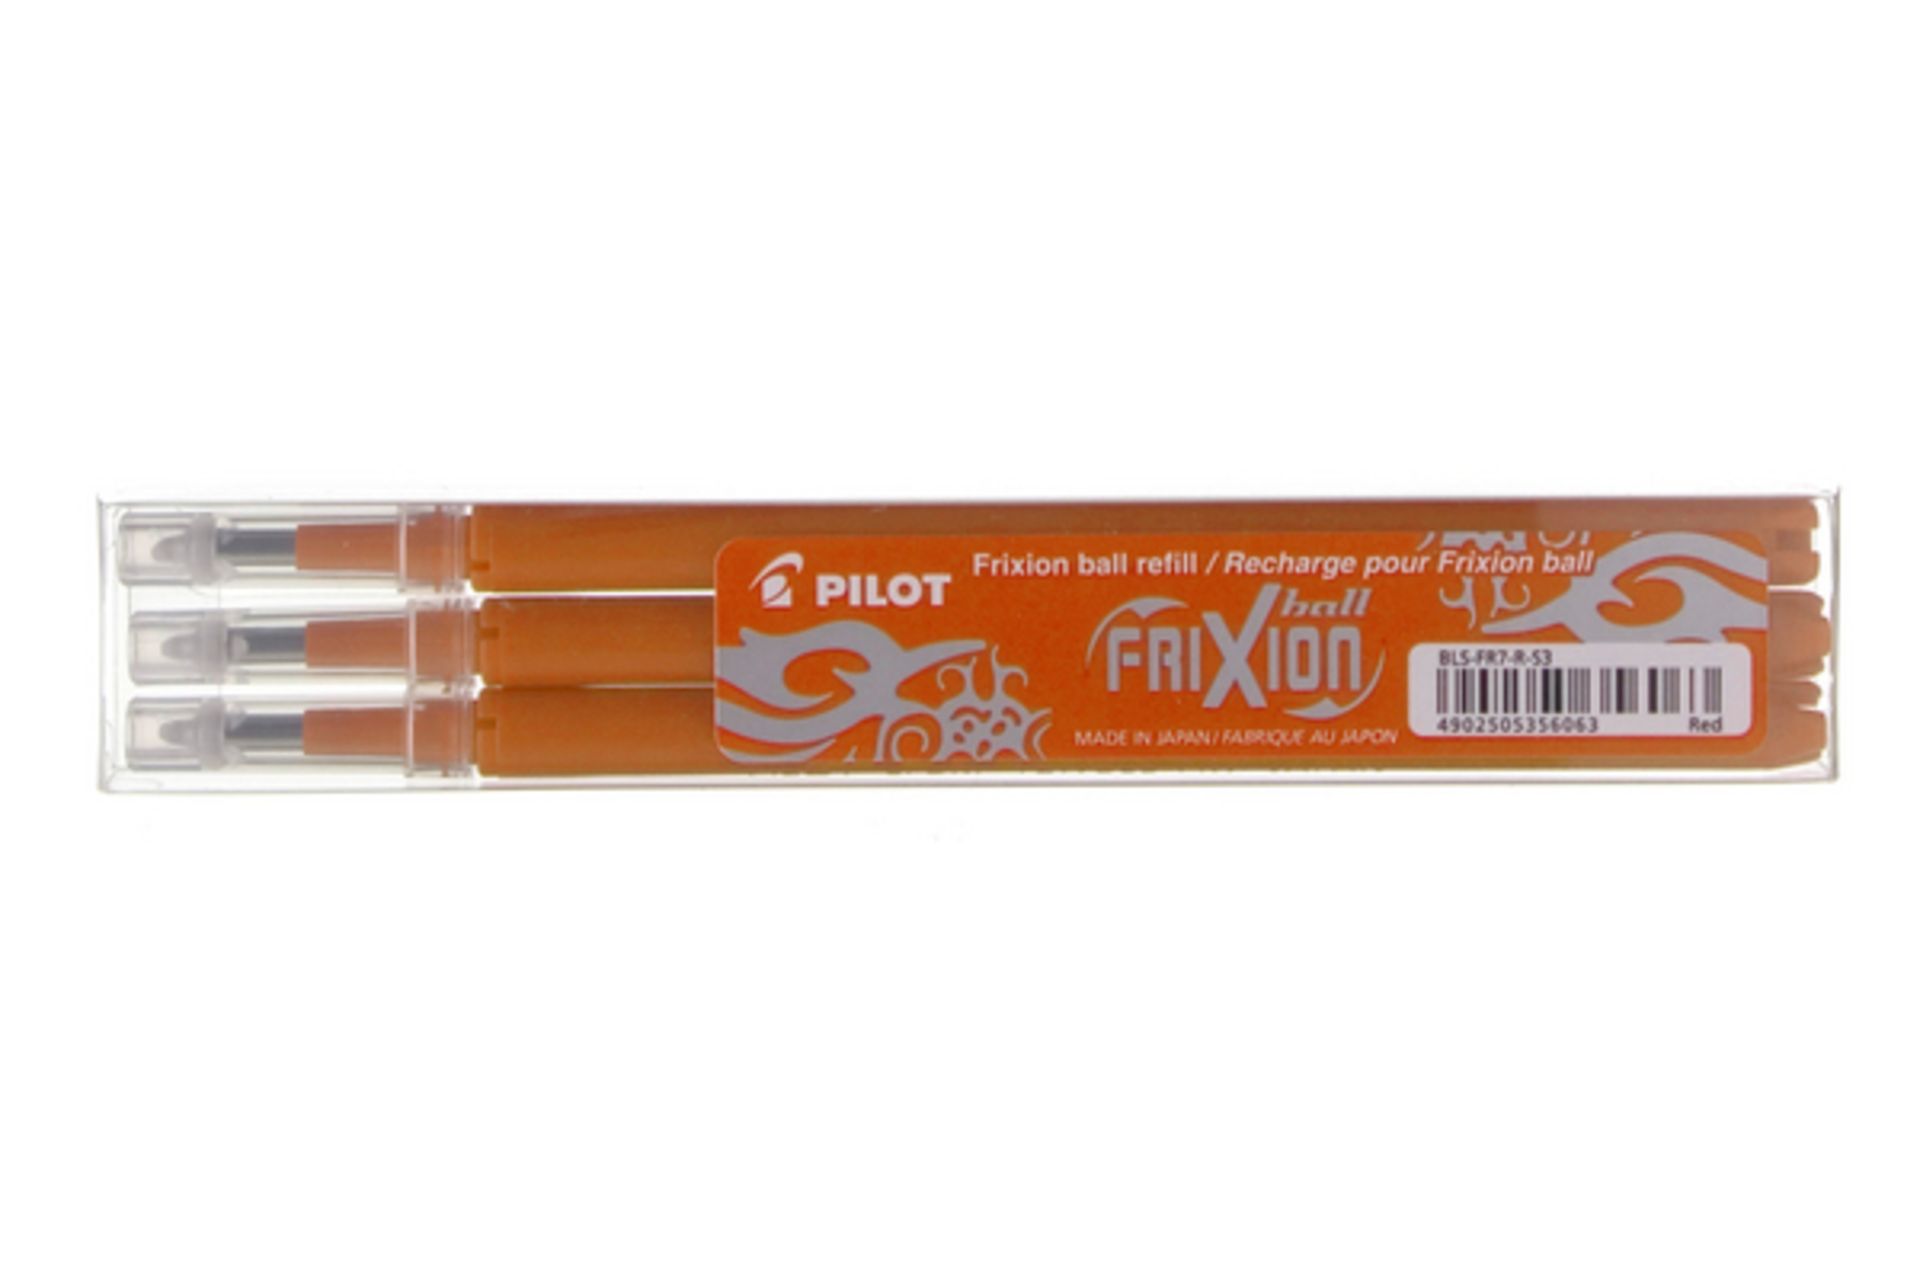 V Grade A Lot Of 7 x 3 Pack Pilot Frixion Pen Refills - Orange Ink ISP £20.93 (Viking) - Image 2 of 2